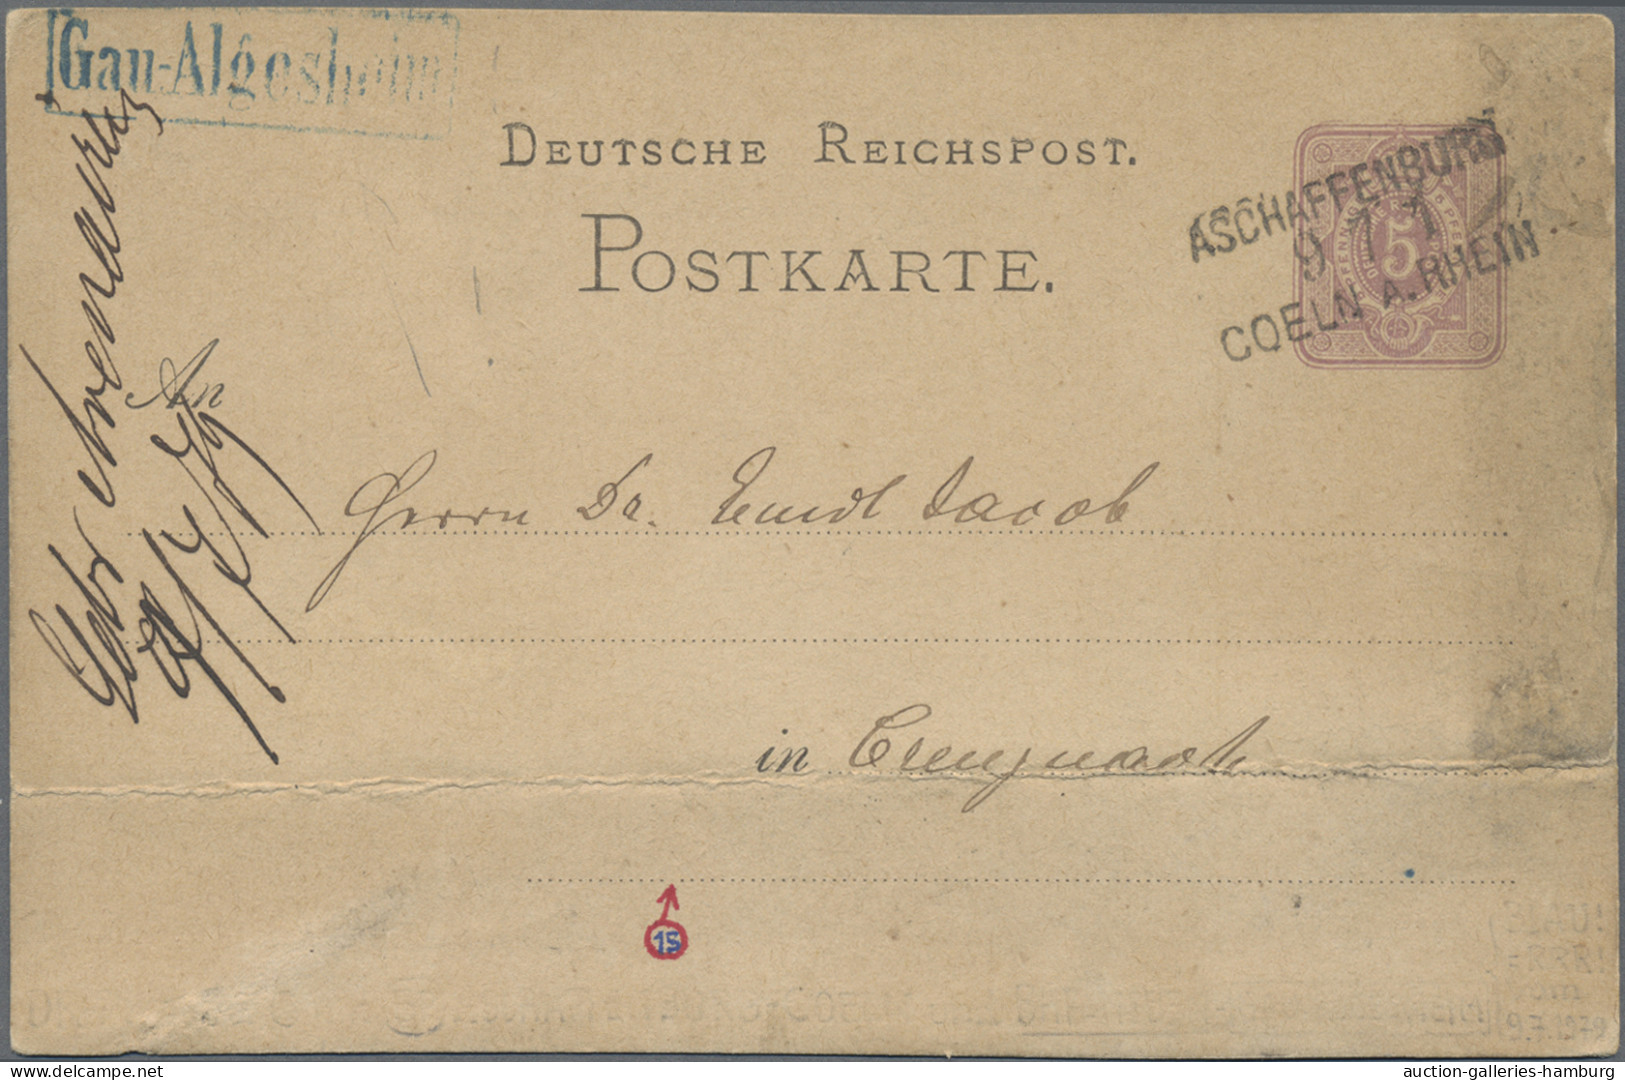 Deutsches Reich - Bahnpost: 1872/1919, Partie von sieben Karten mit Bahnpost-Ent